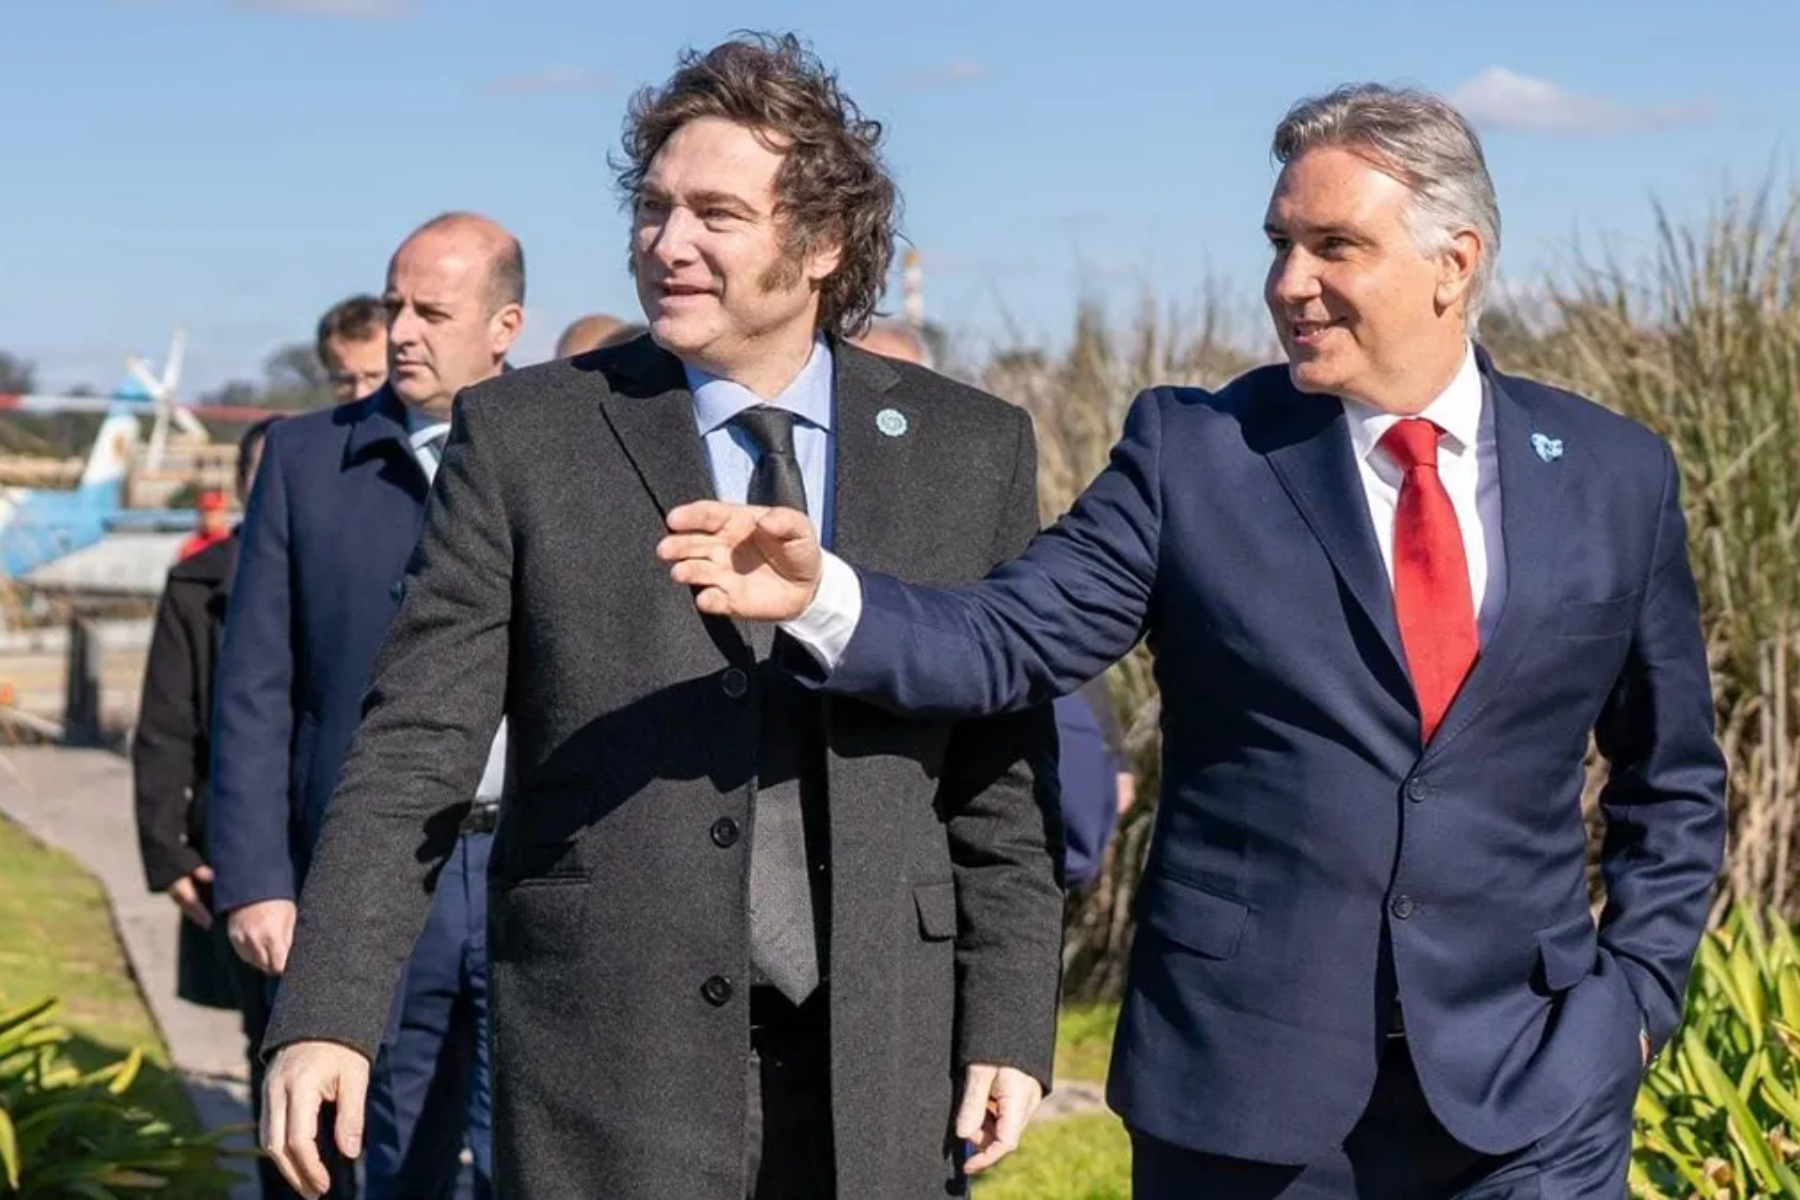 Martín Llaryora y Javier Milei en el Centro Cívico de Córdoba, durante la visita del presidente a la provincia. Foto Gentileza.